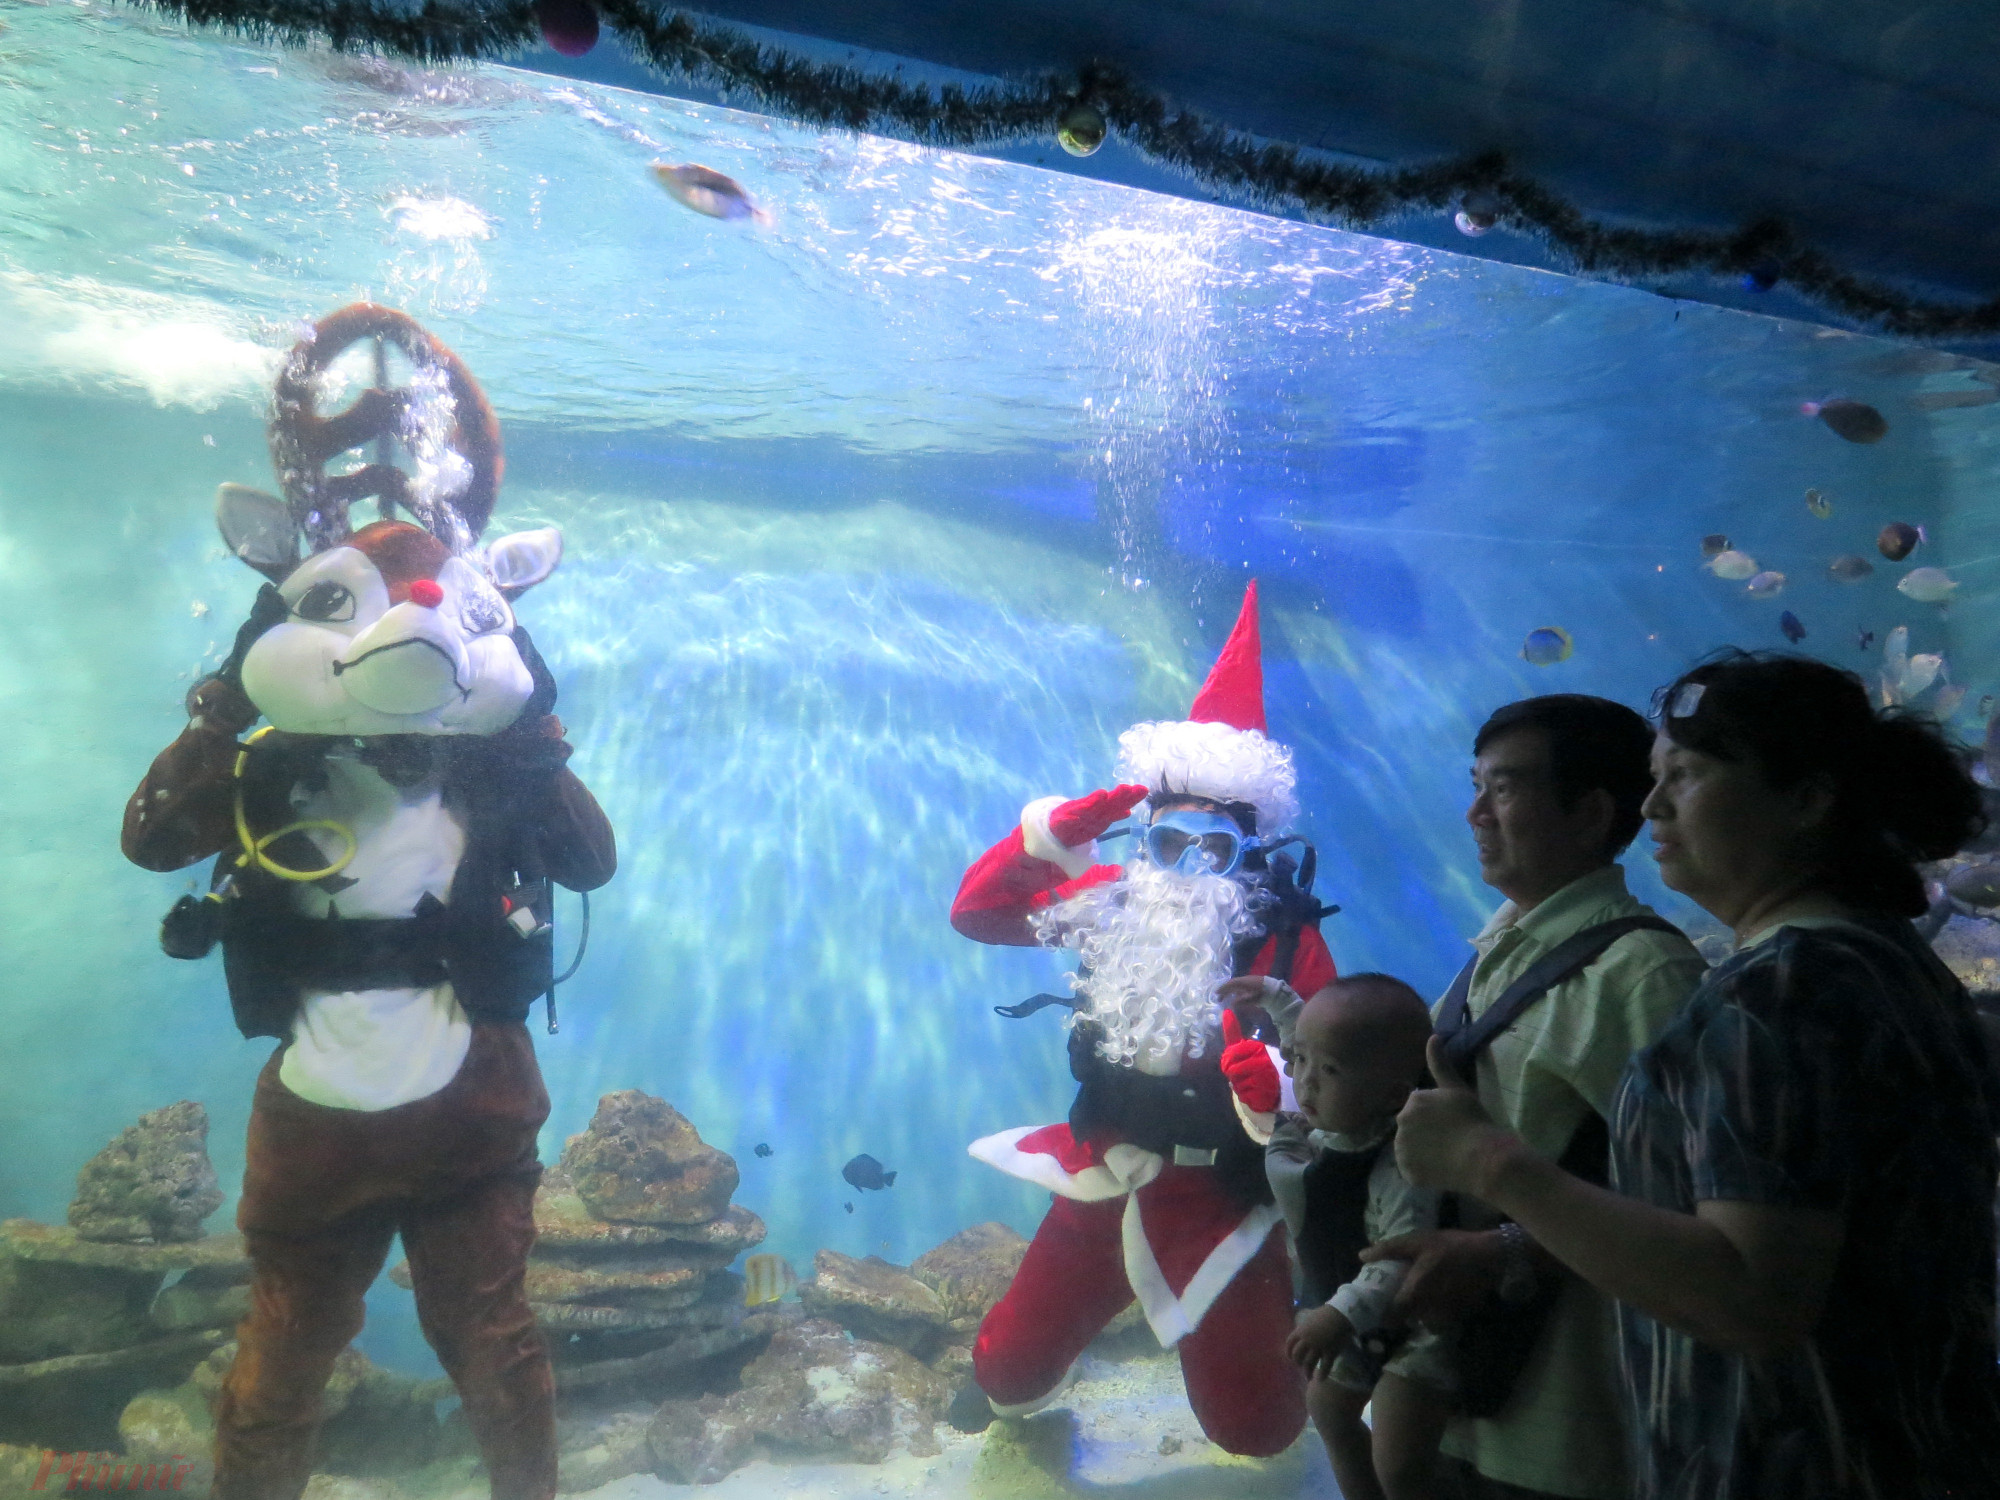 Không chỉ các em nhỏ mà người lớn cũng rất bất ngờ với màn biểu diễn dưới nước của ông già Noel